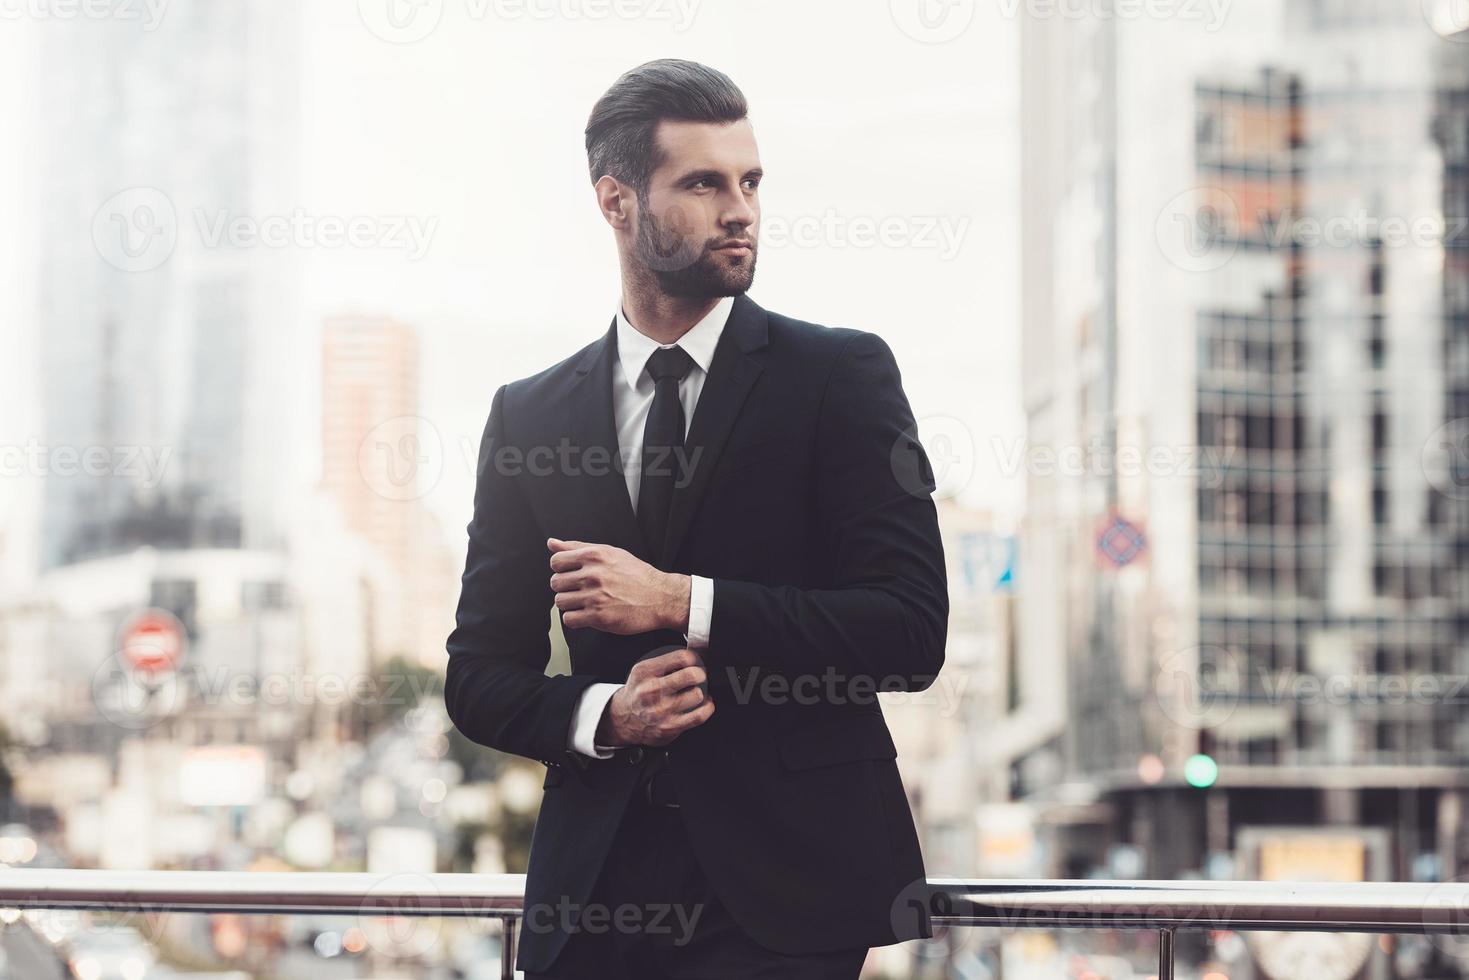 hombre de negocios moderno. joven confiado con traje completo ajustando su manga y mirando hacia otro lado mientras está de pie al aire libre con el paisaje urbano en el fondo foto